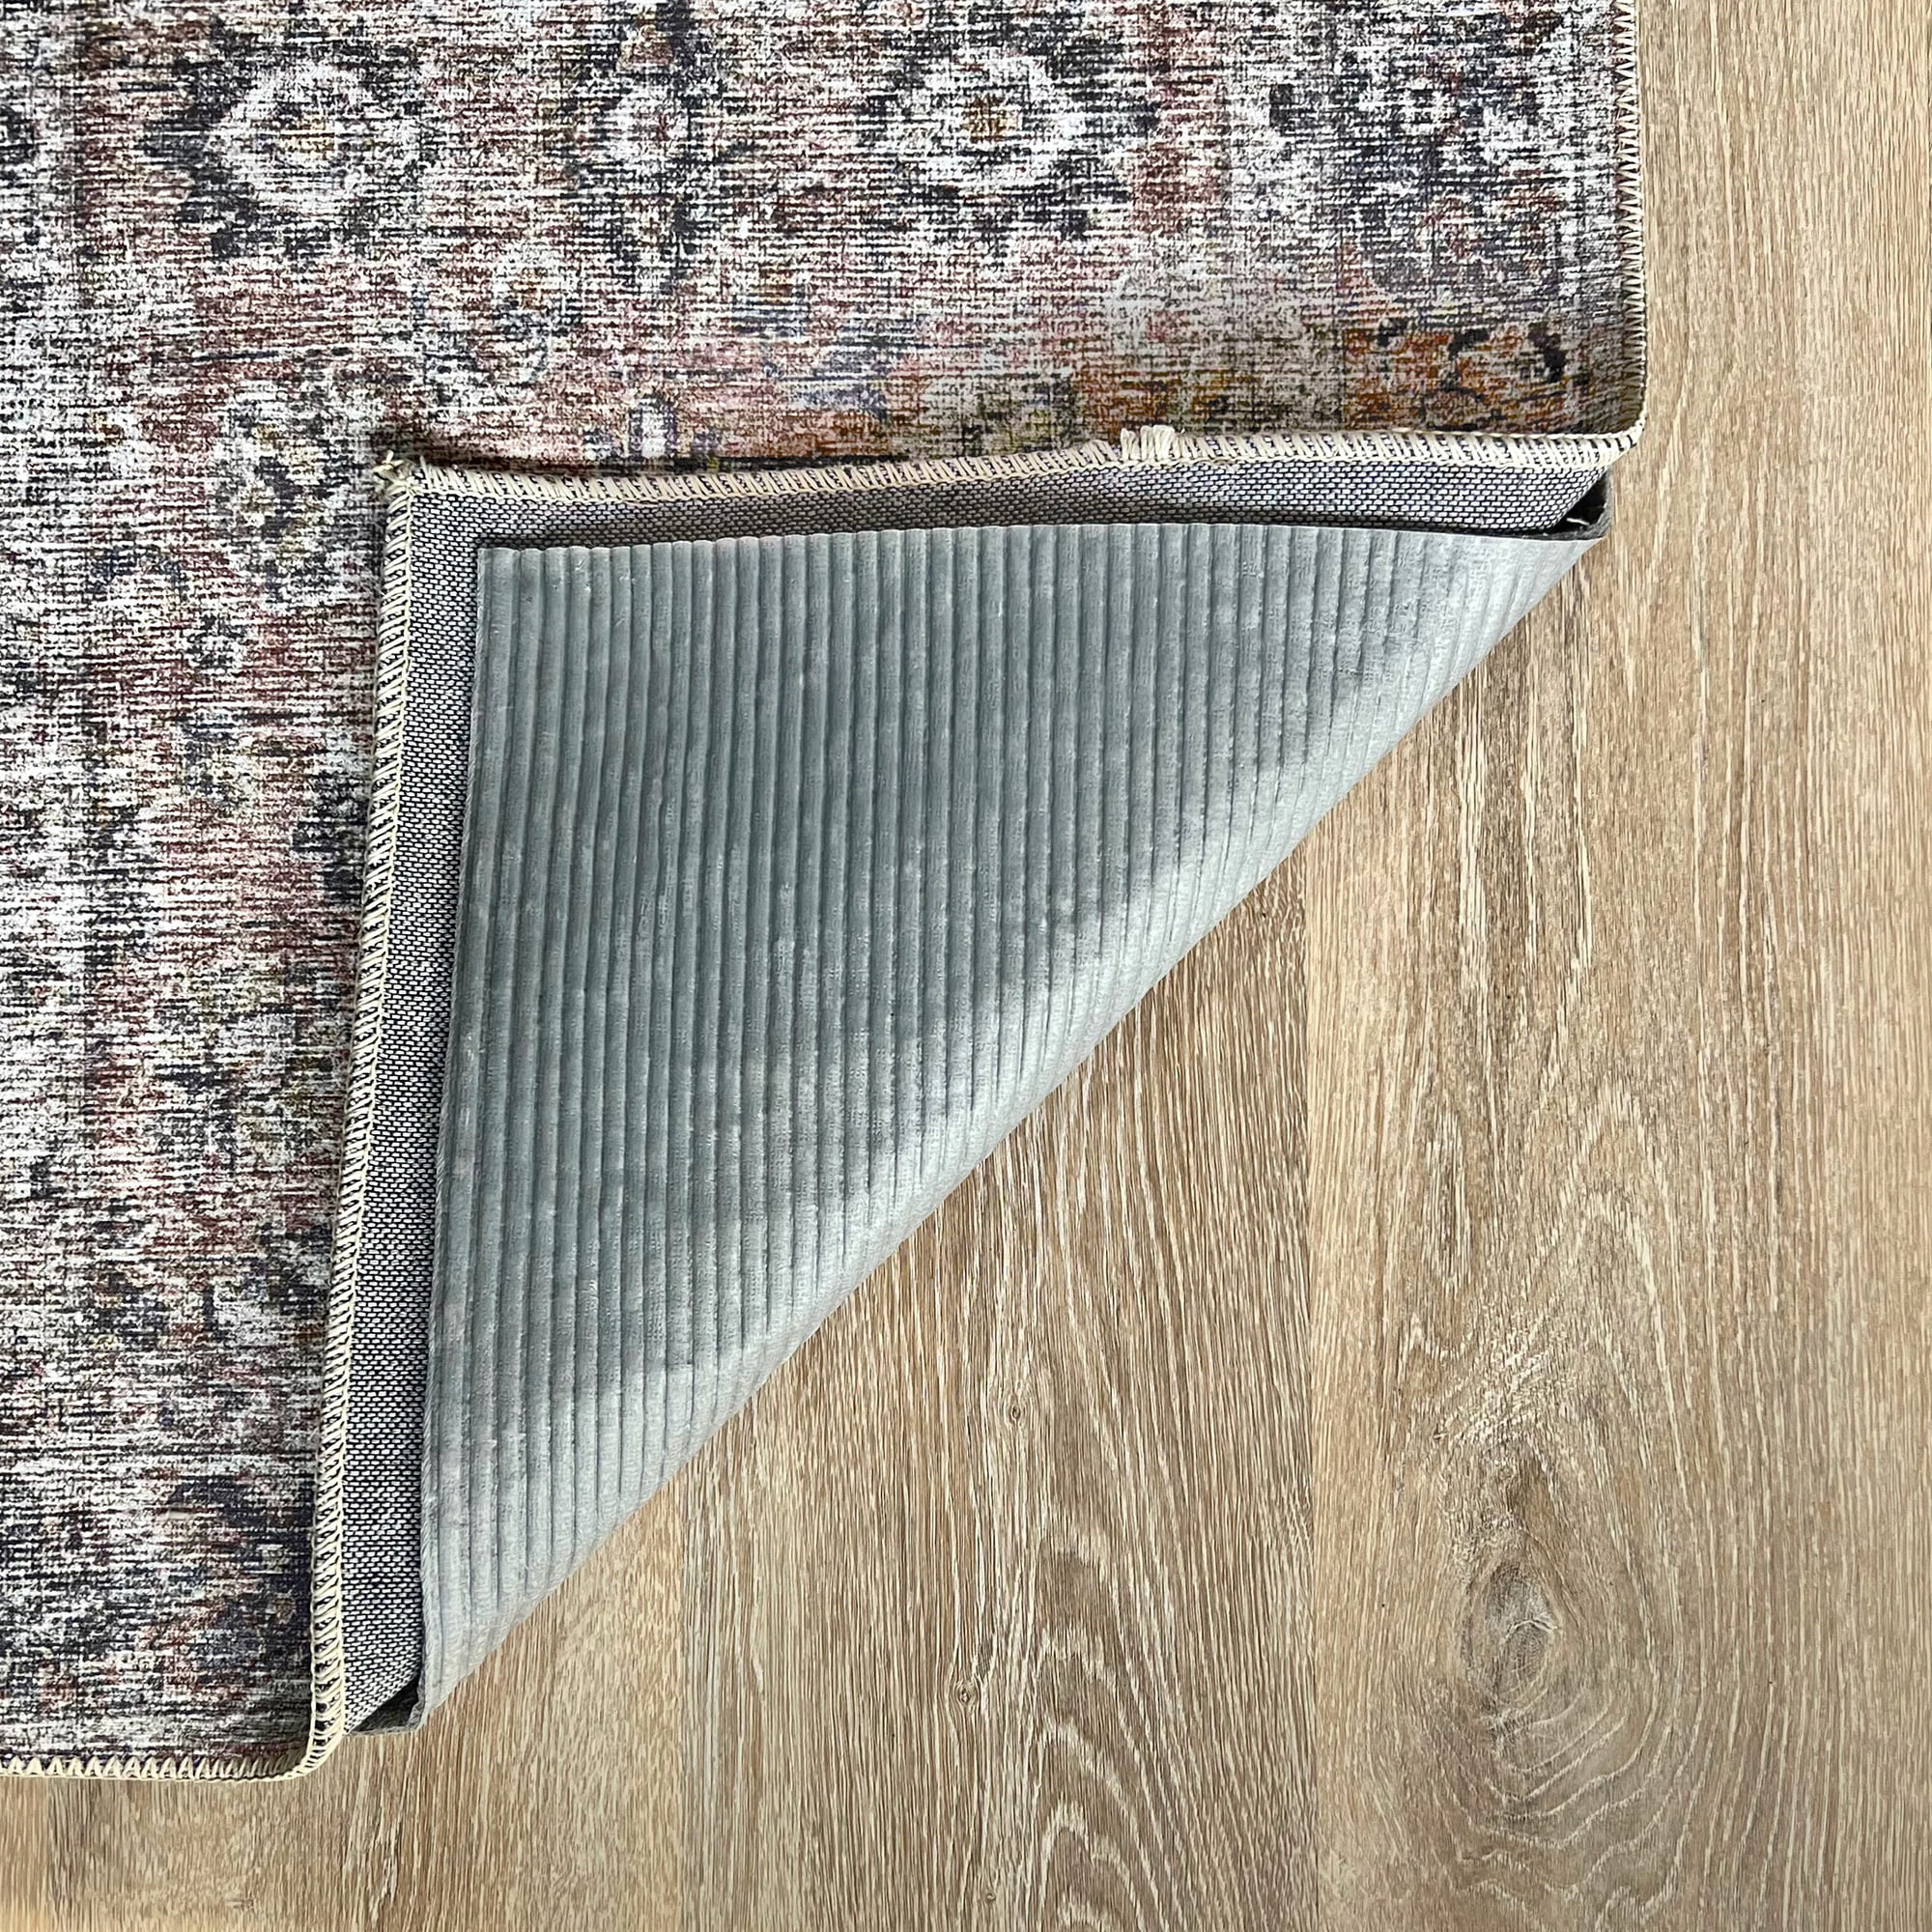 71in180cm Width Non-slip Rug Pad,carpet Underlay Felt Backing